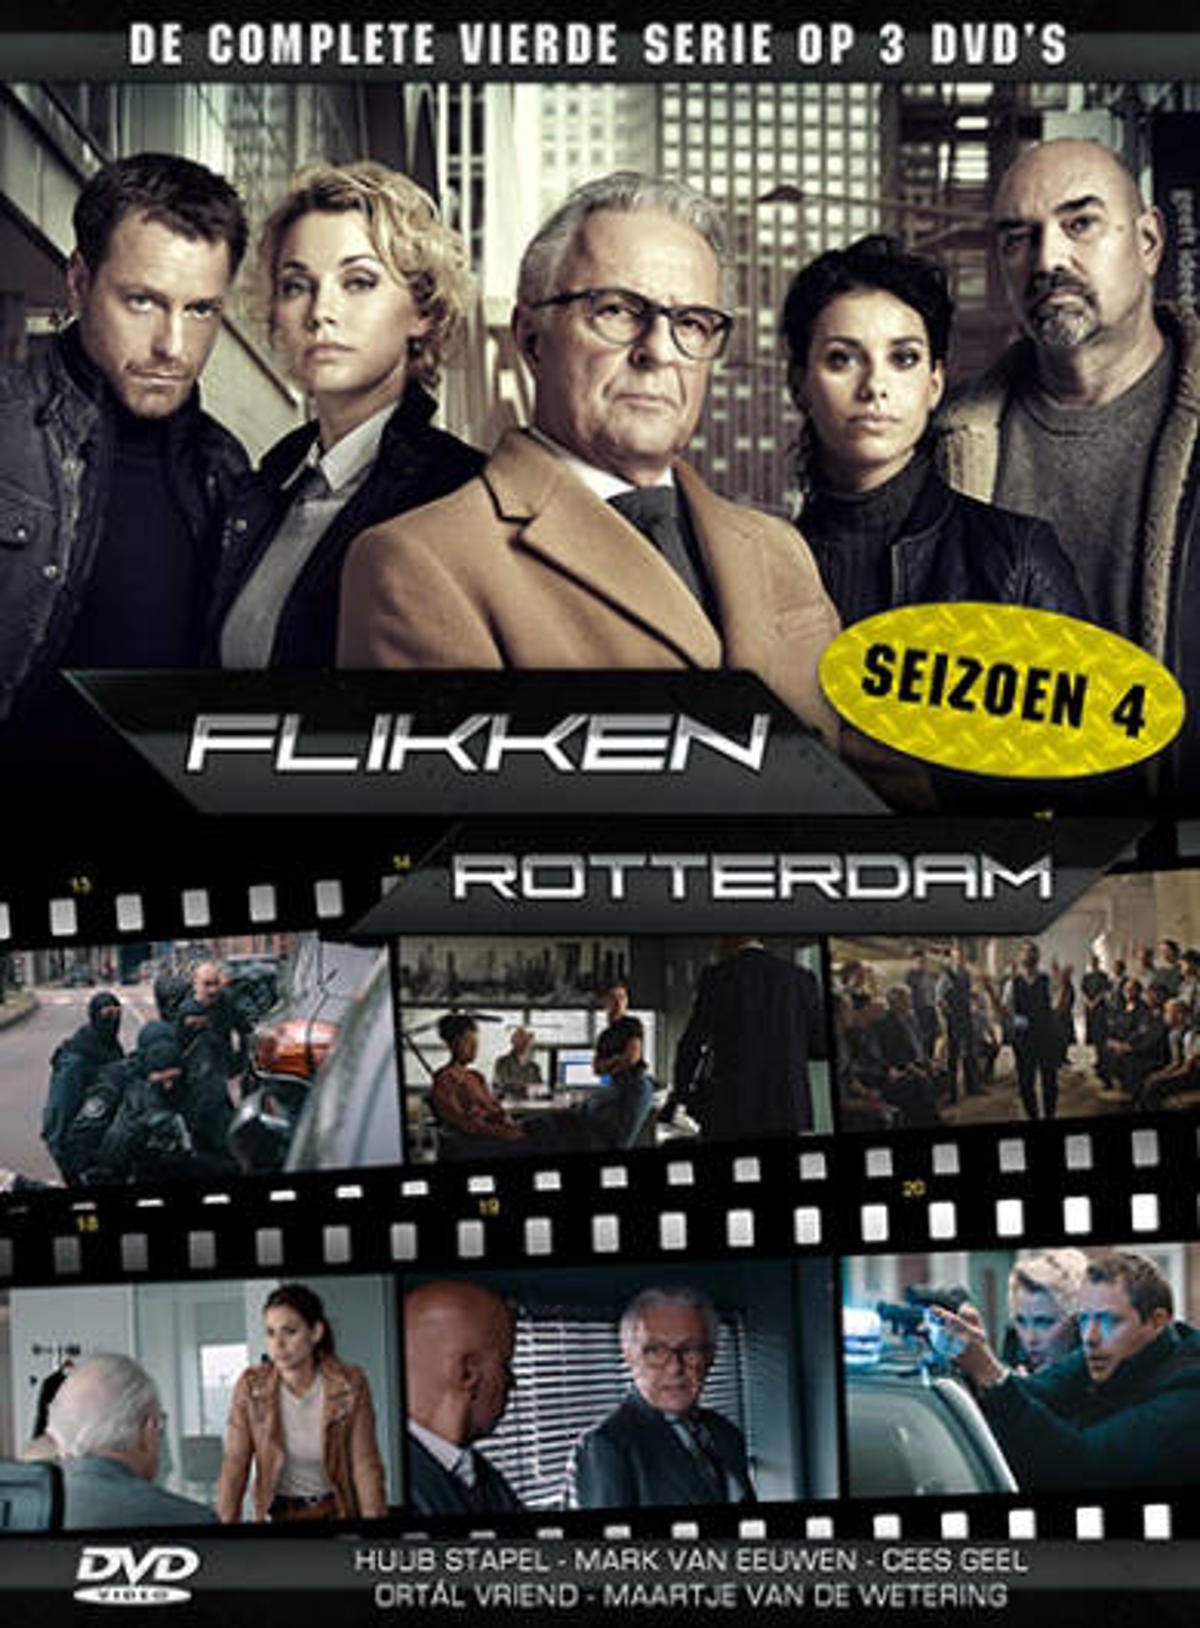 methaan propeller verhaal Flikken Rotterdam - Seizoen 4 (DVD) | wehkamp